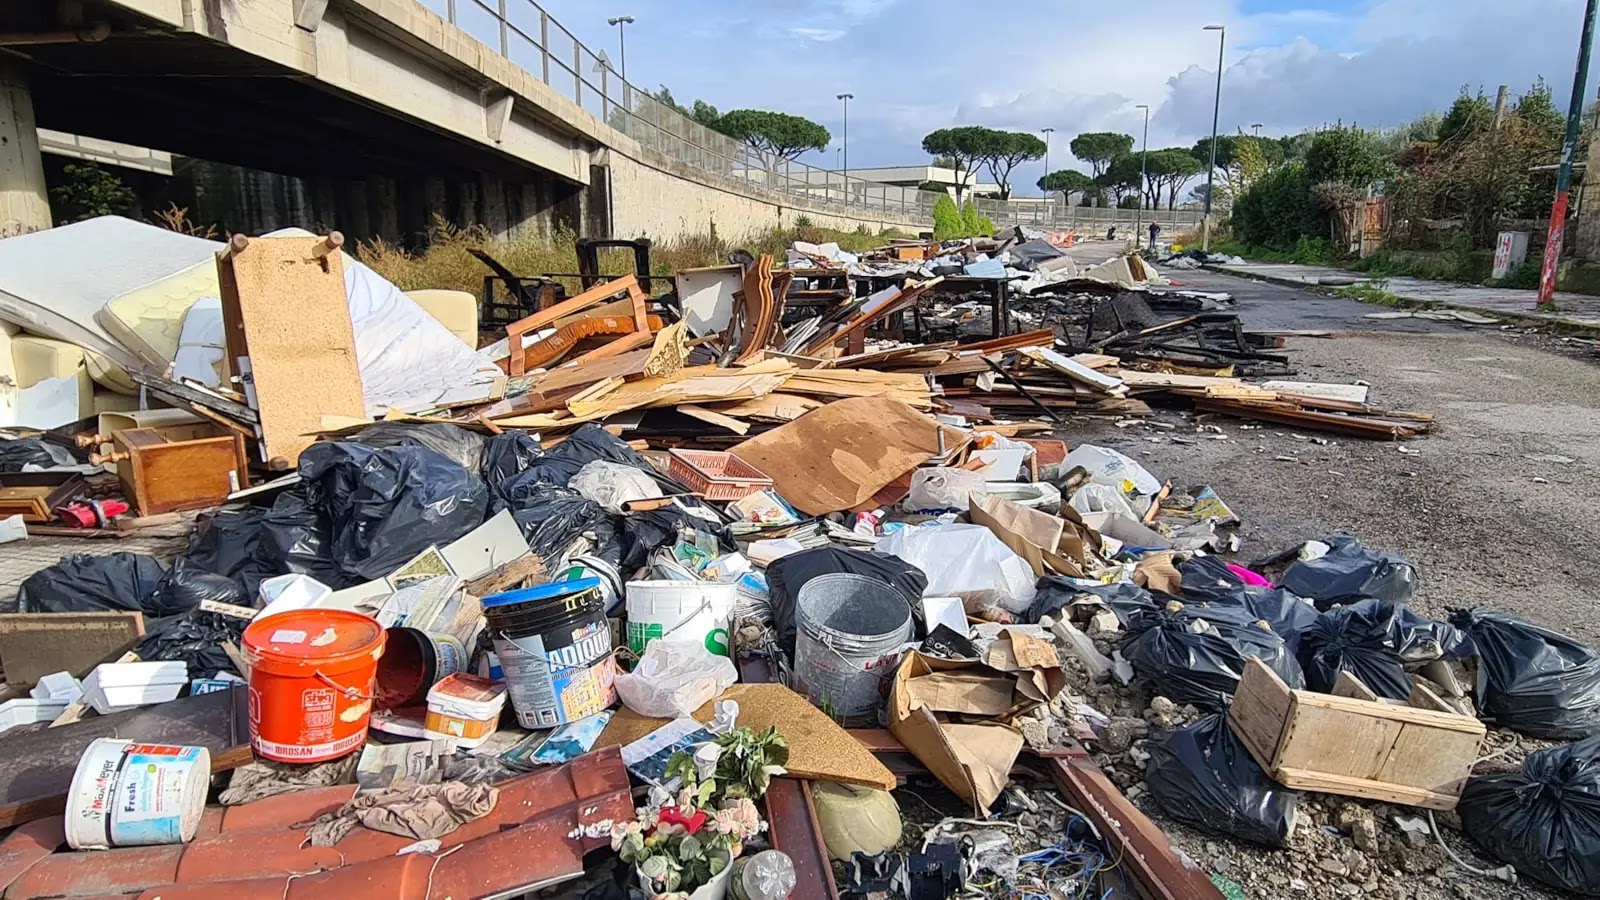 La strada discarica a Napoli